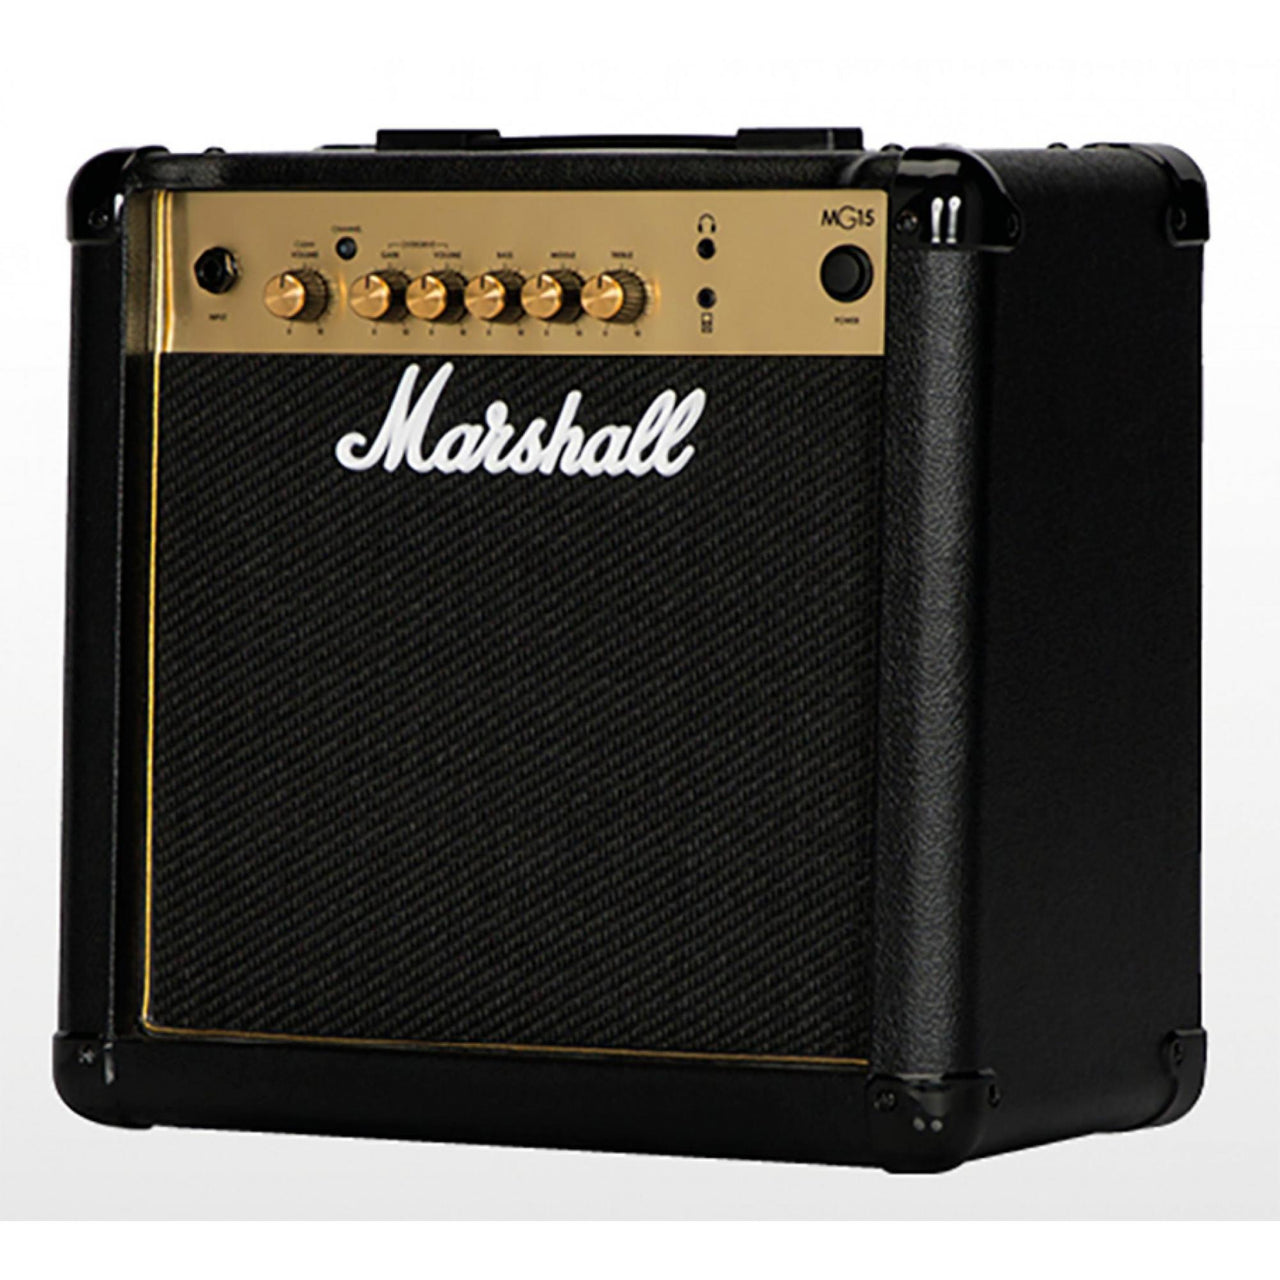 Las mejores ofertas en Amplificadores para guitarra Marshall